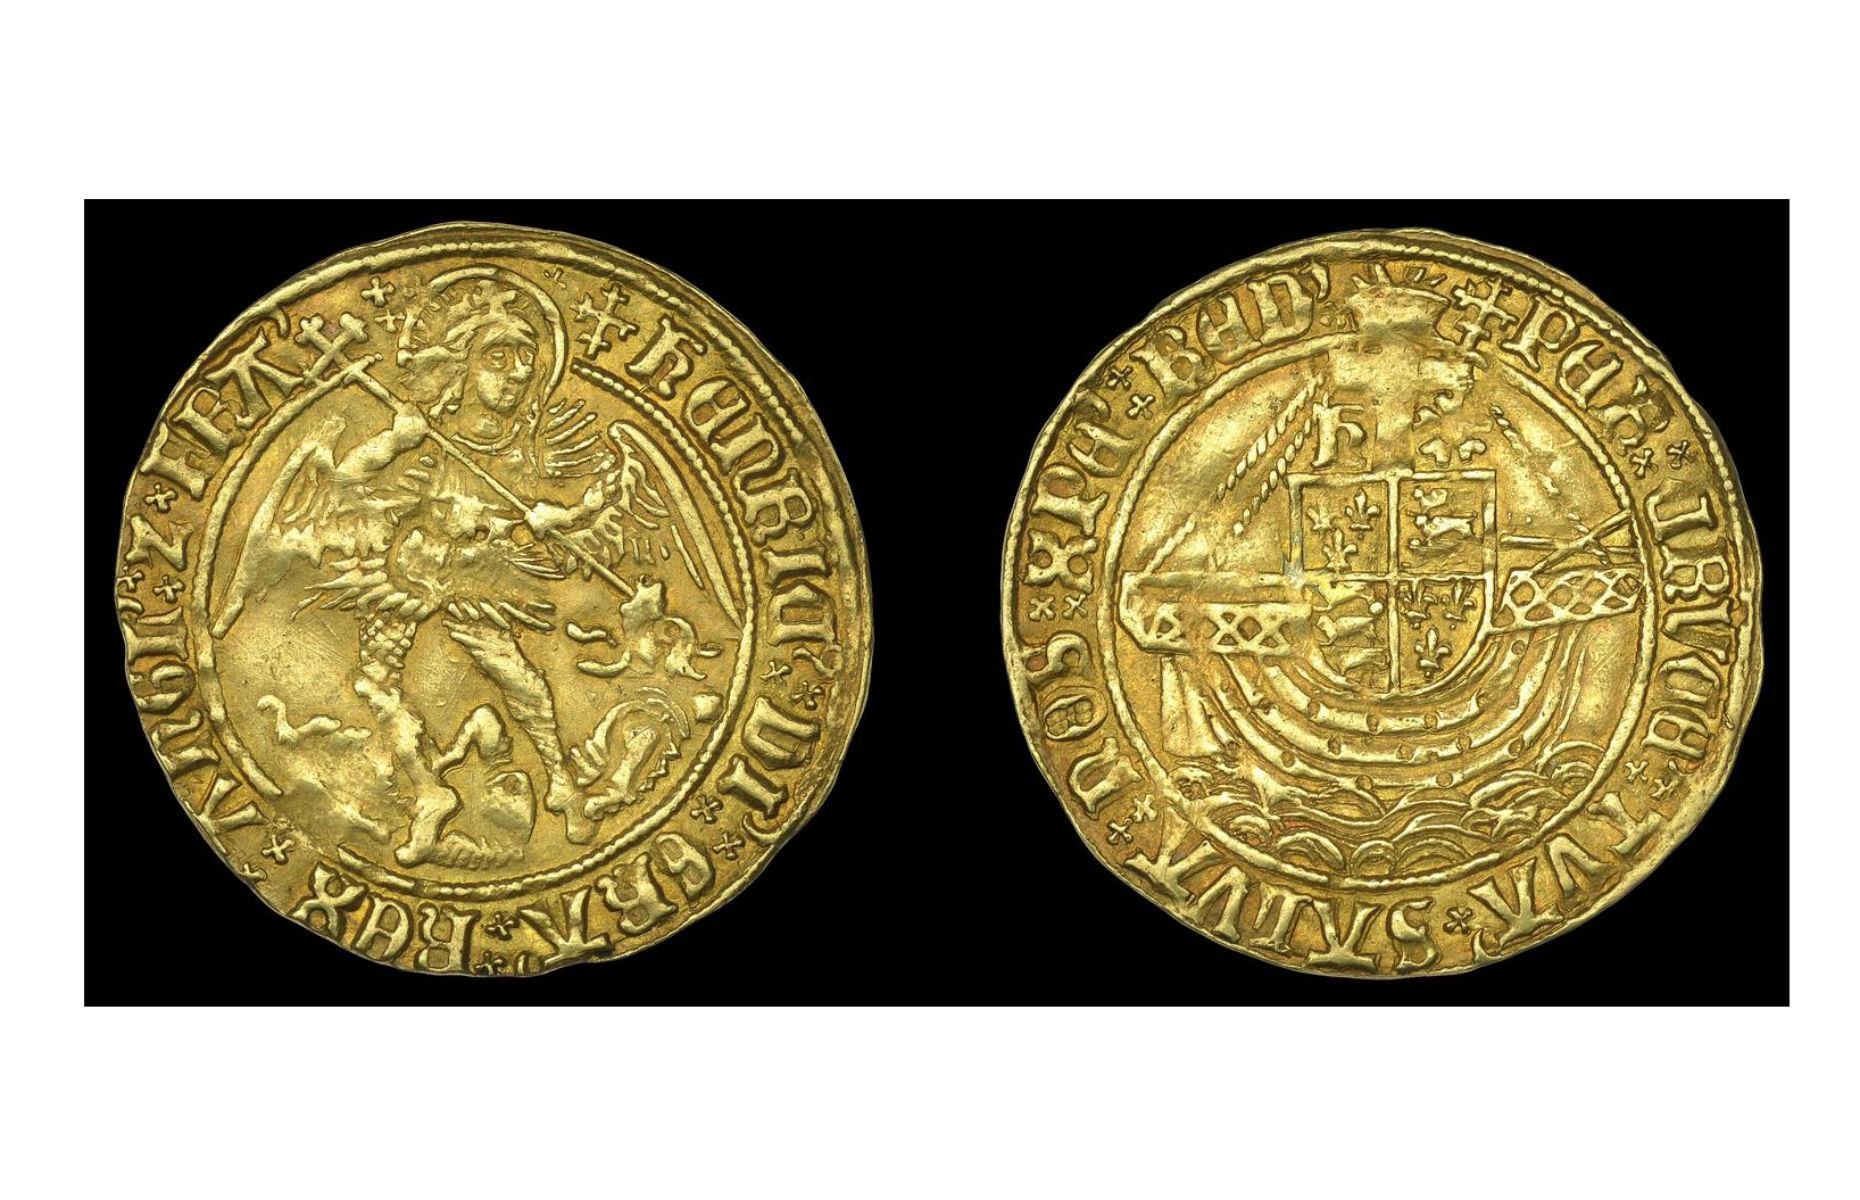 A rare gold coin